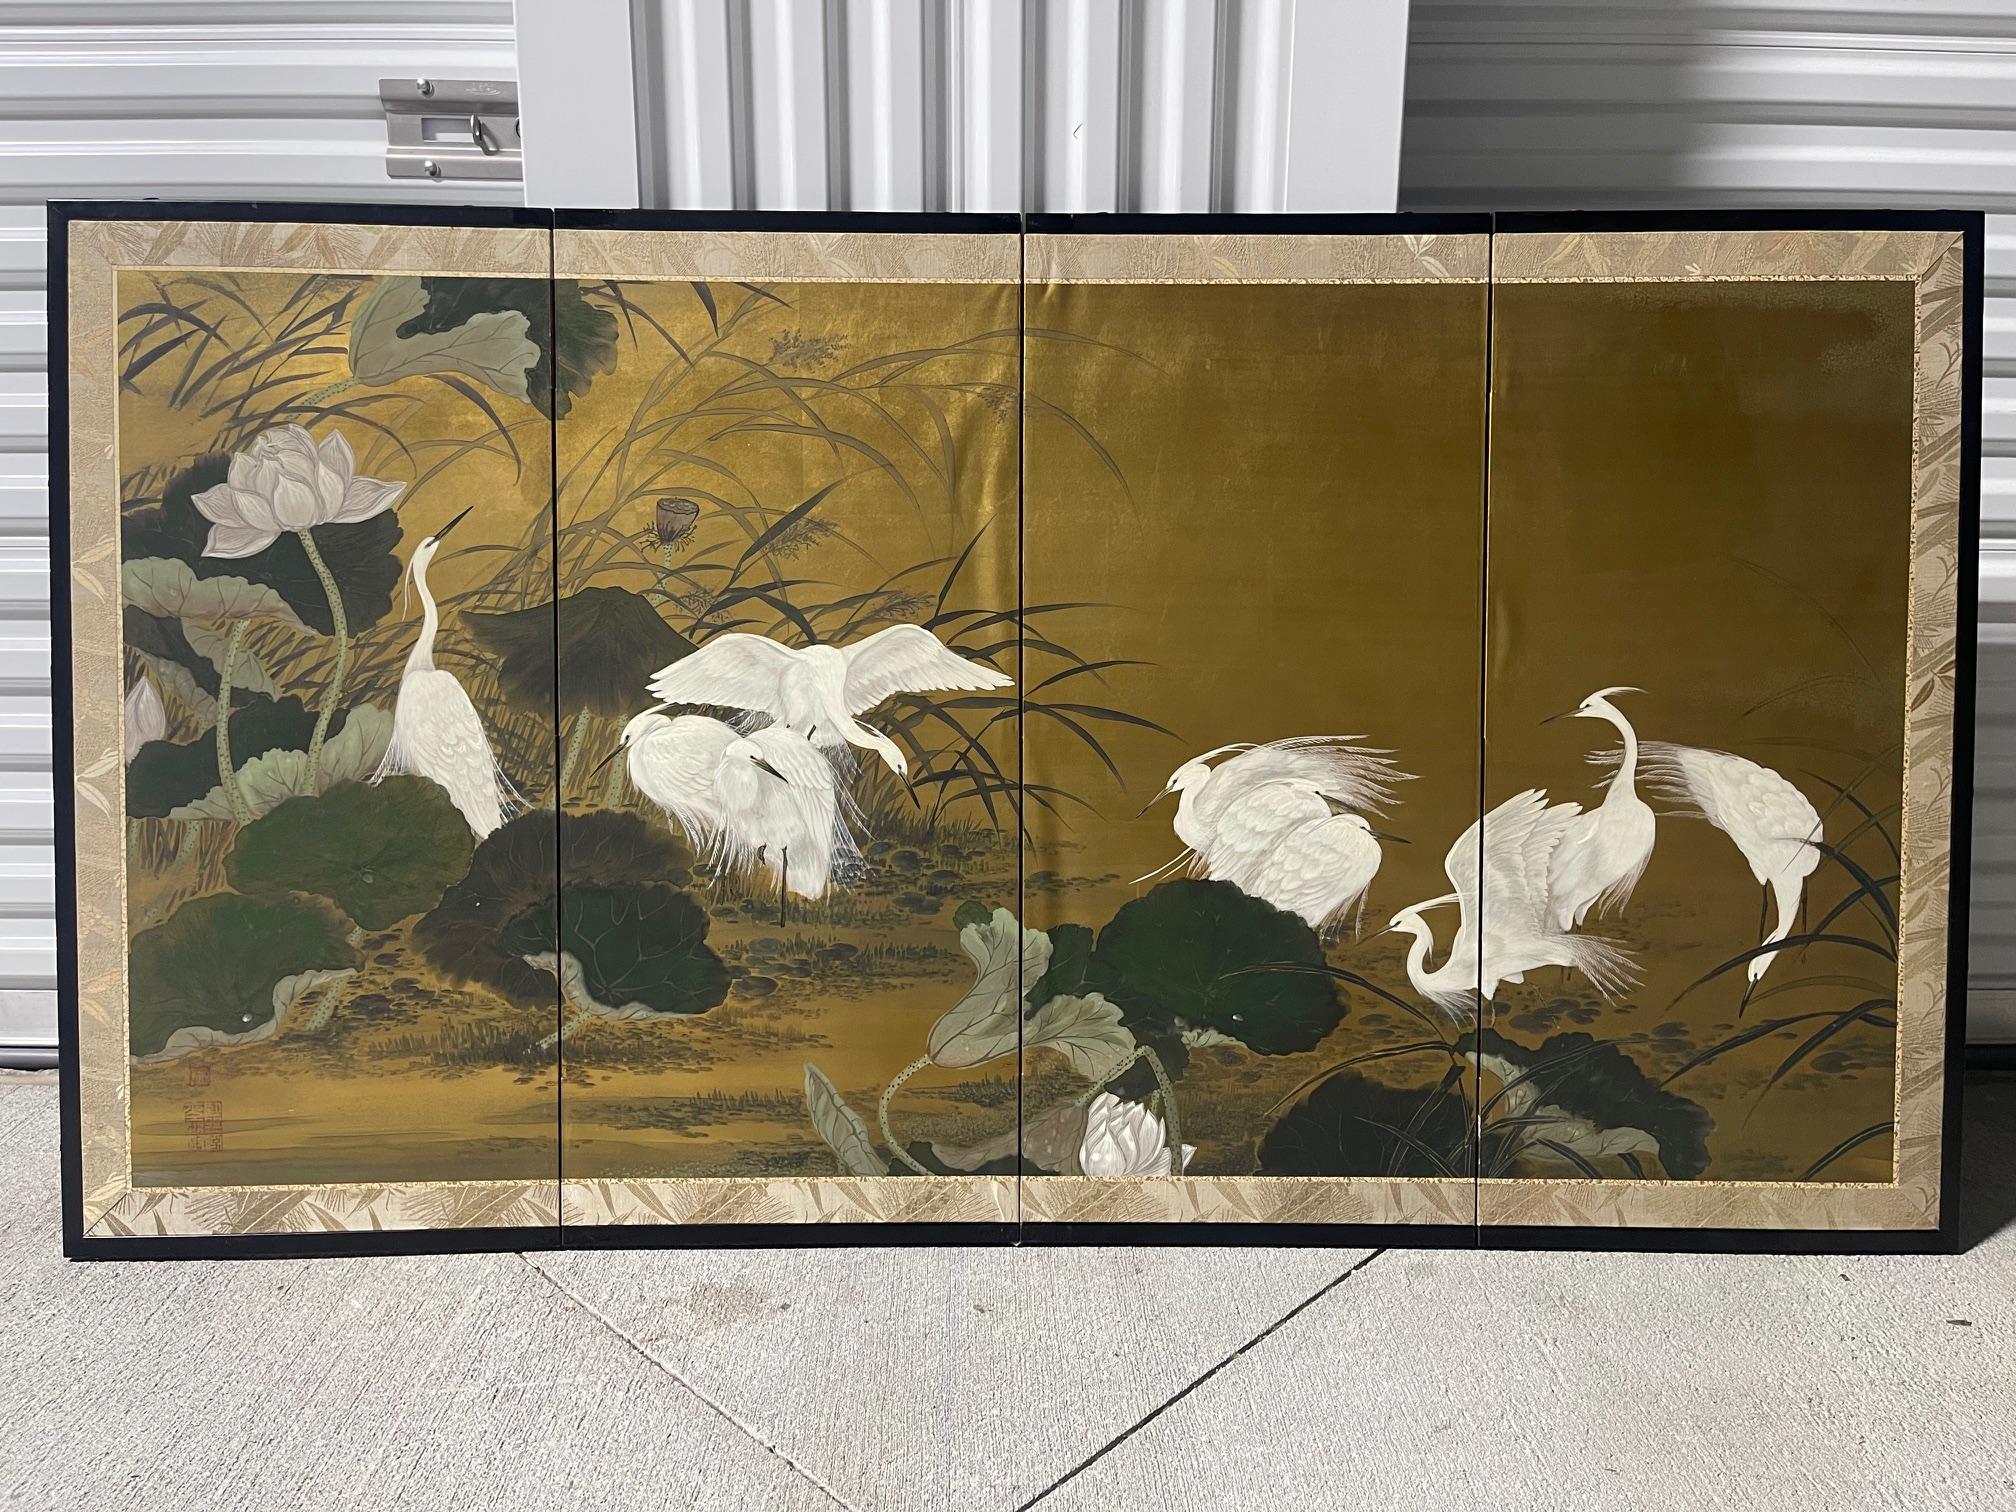 Japanischer Byobu-Faltwandschirm mit vier Feldern, die eine Szene mit in einem Wald rastenden Reihern darstellen.  Die dunklen, satten Farben, das Blattgold und die schönen handgemalten Details machen dieses Werk zu etwas ganz Besonderem.  Jede